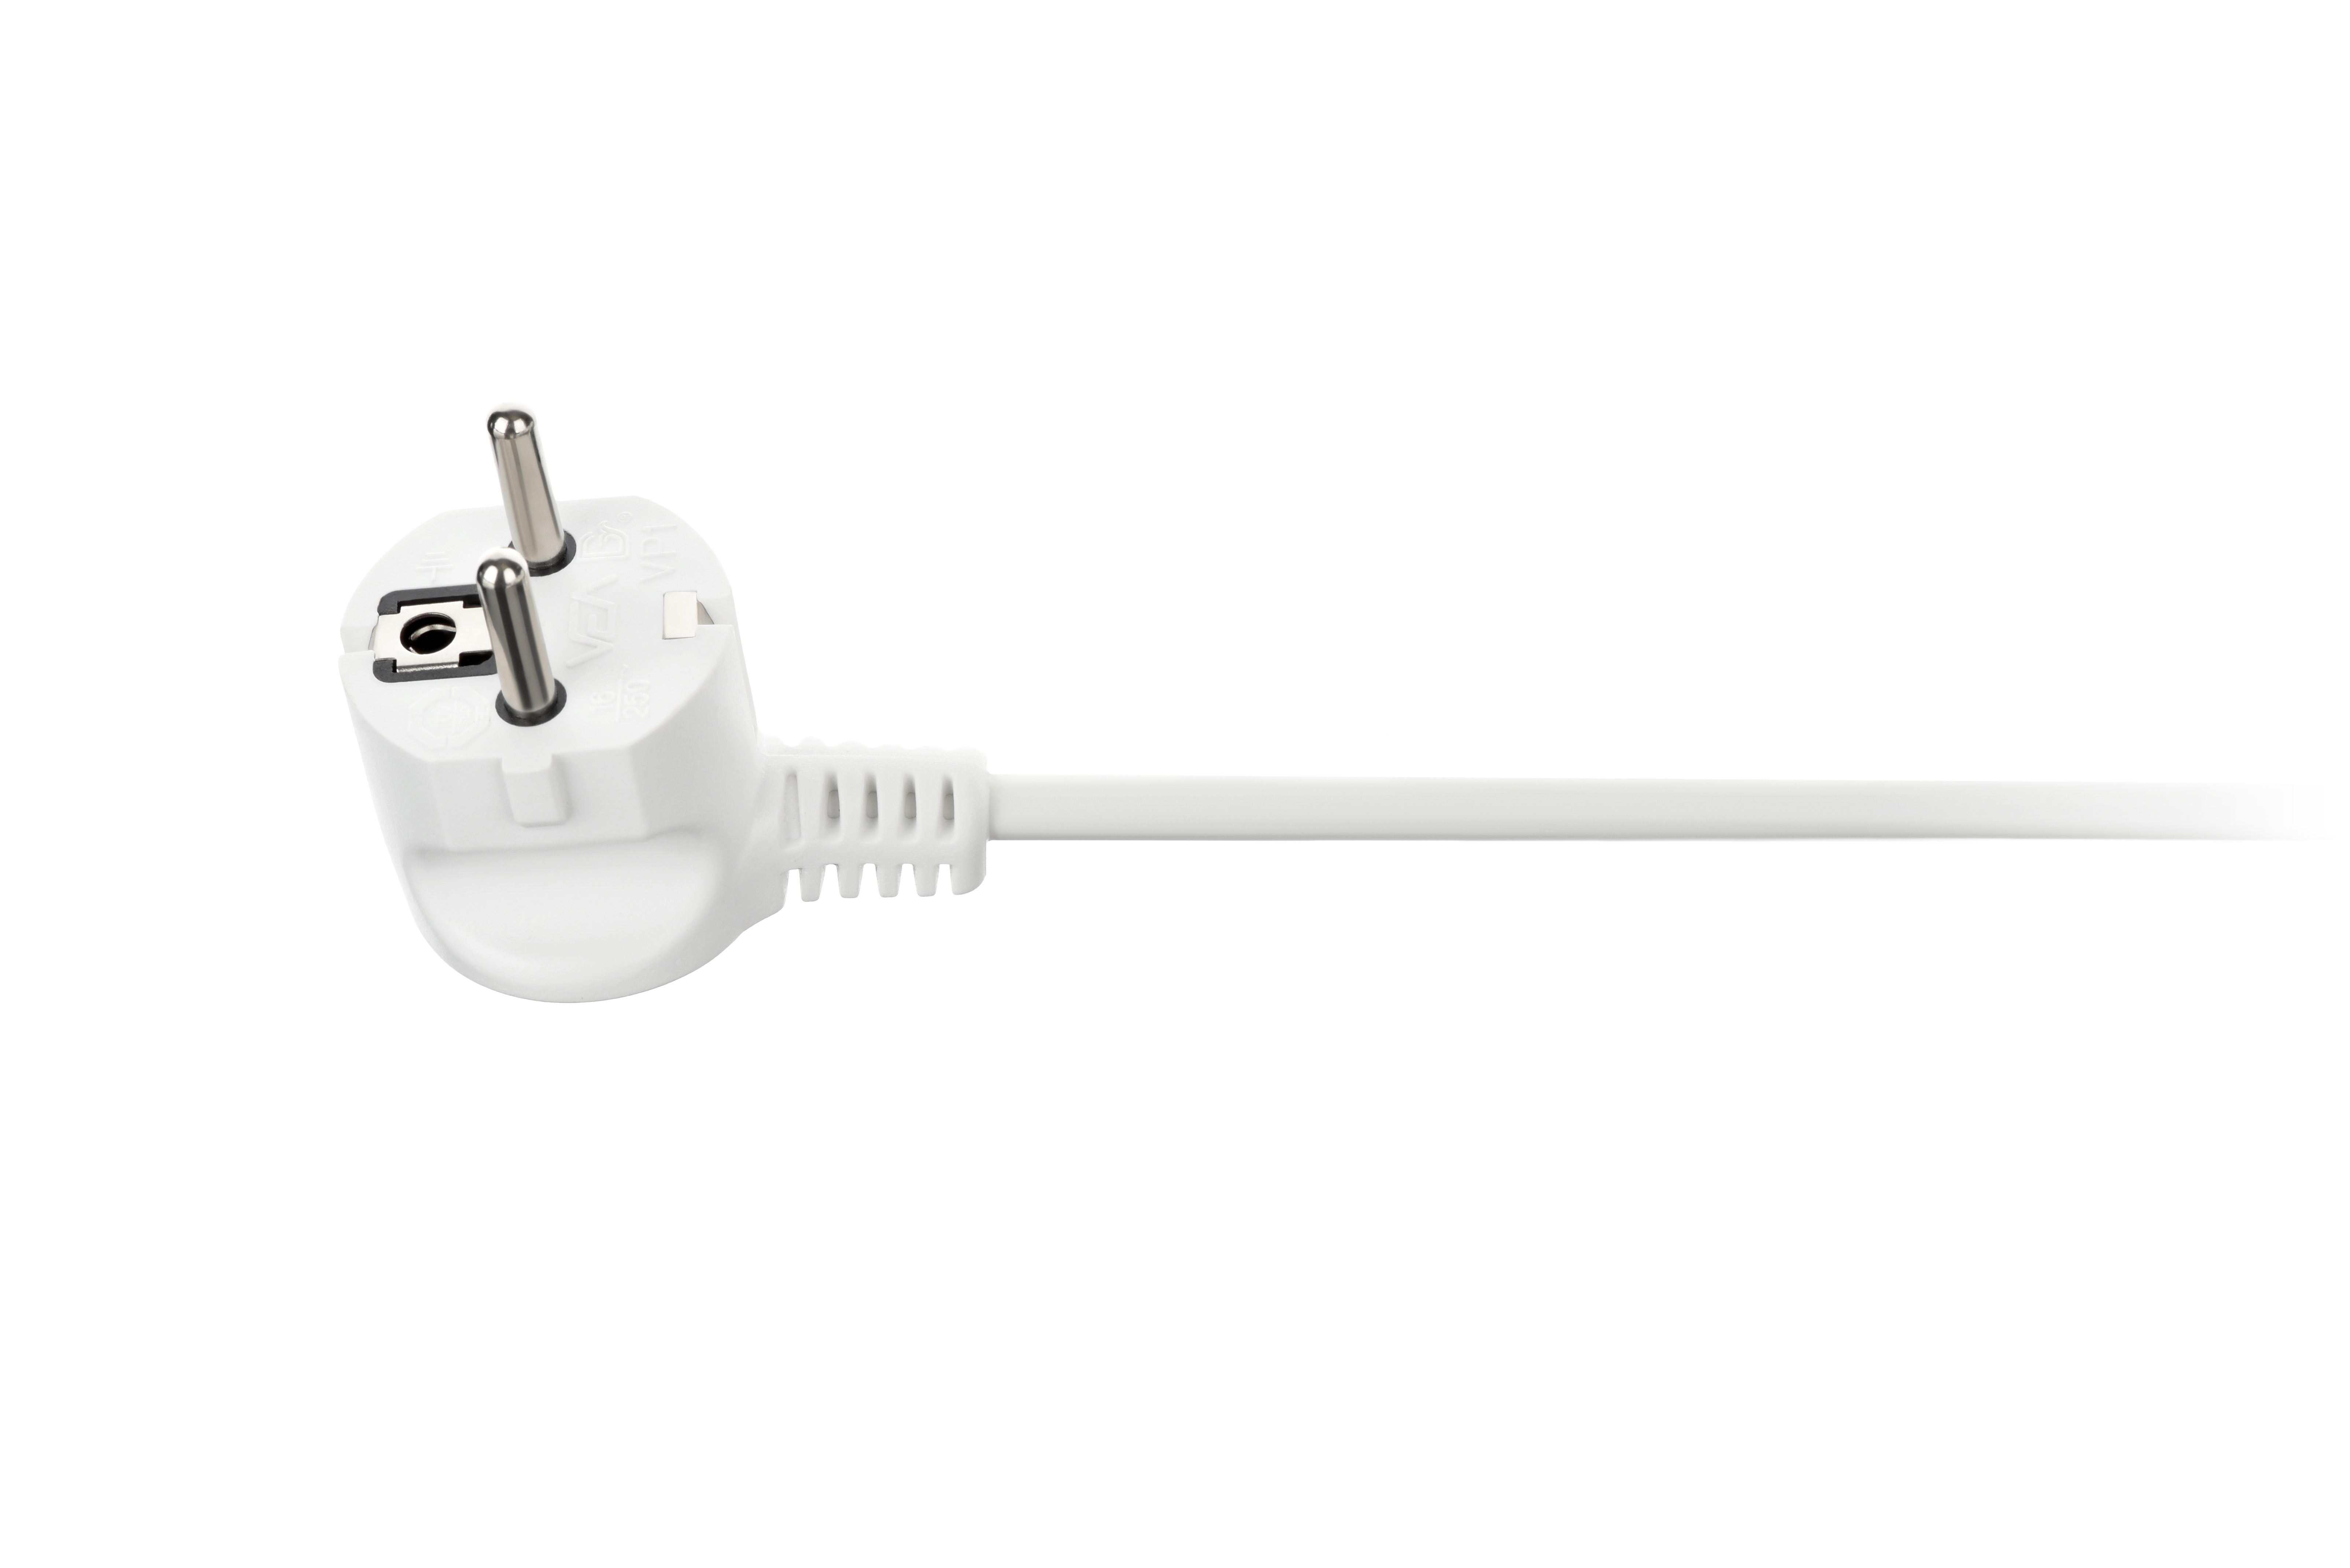 Сетевой удлинитель 2E 3XSchuko с выключателем, 3G*1.5 мм, 1.5м, white (U03ESM1) характеристики - фотография 7